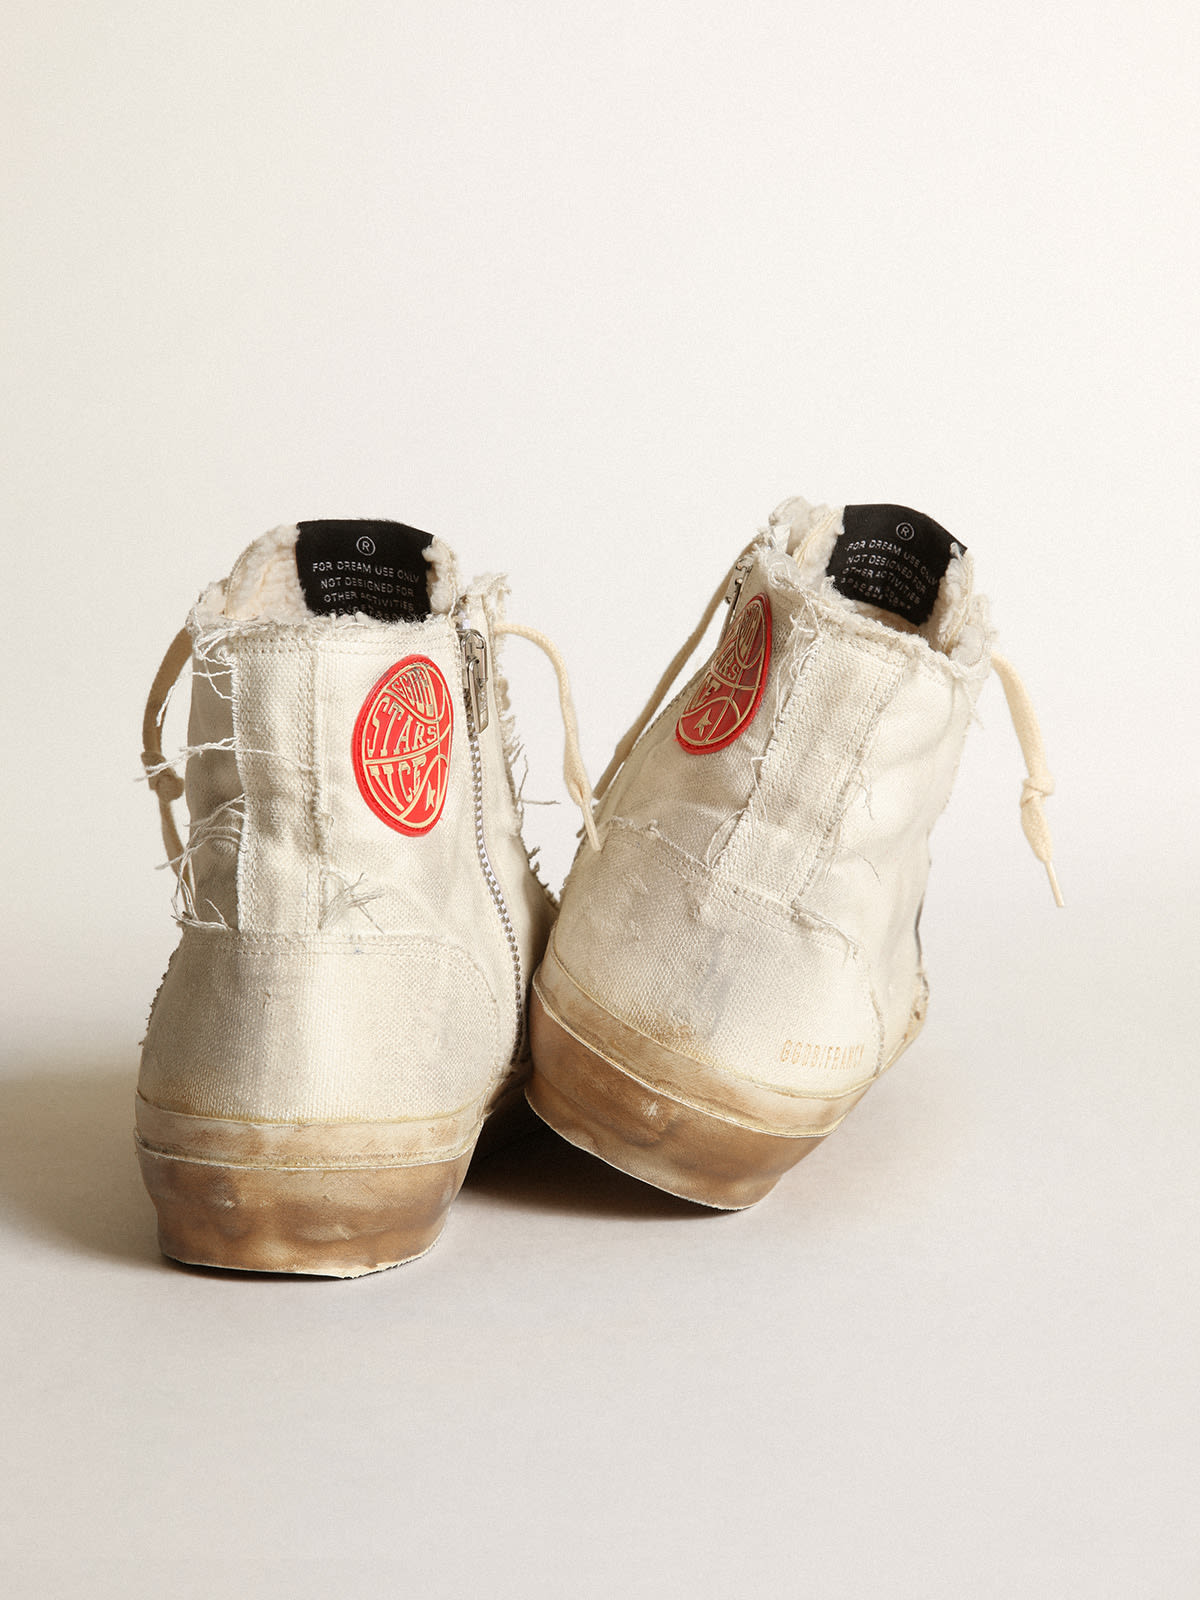 Golden Goose - Sneaker Francy aus elfenbeinfarbenem Canvas mit weißem Lederstern in 